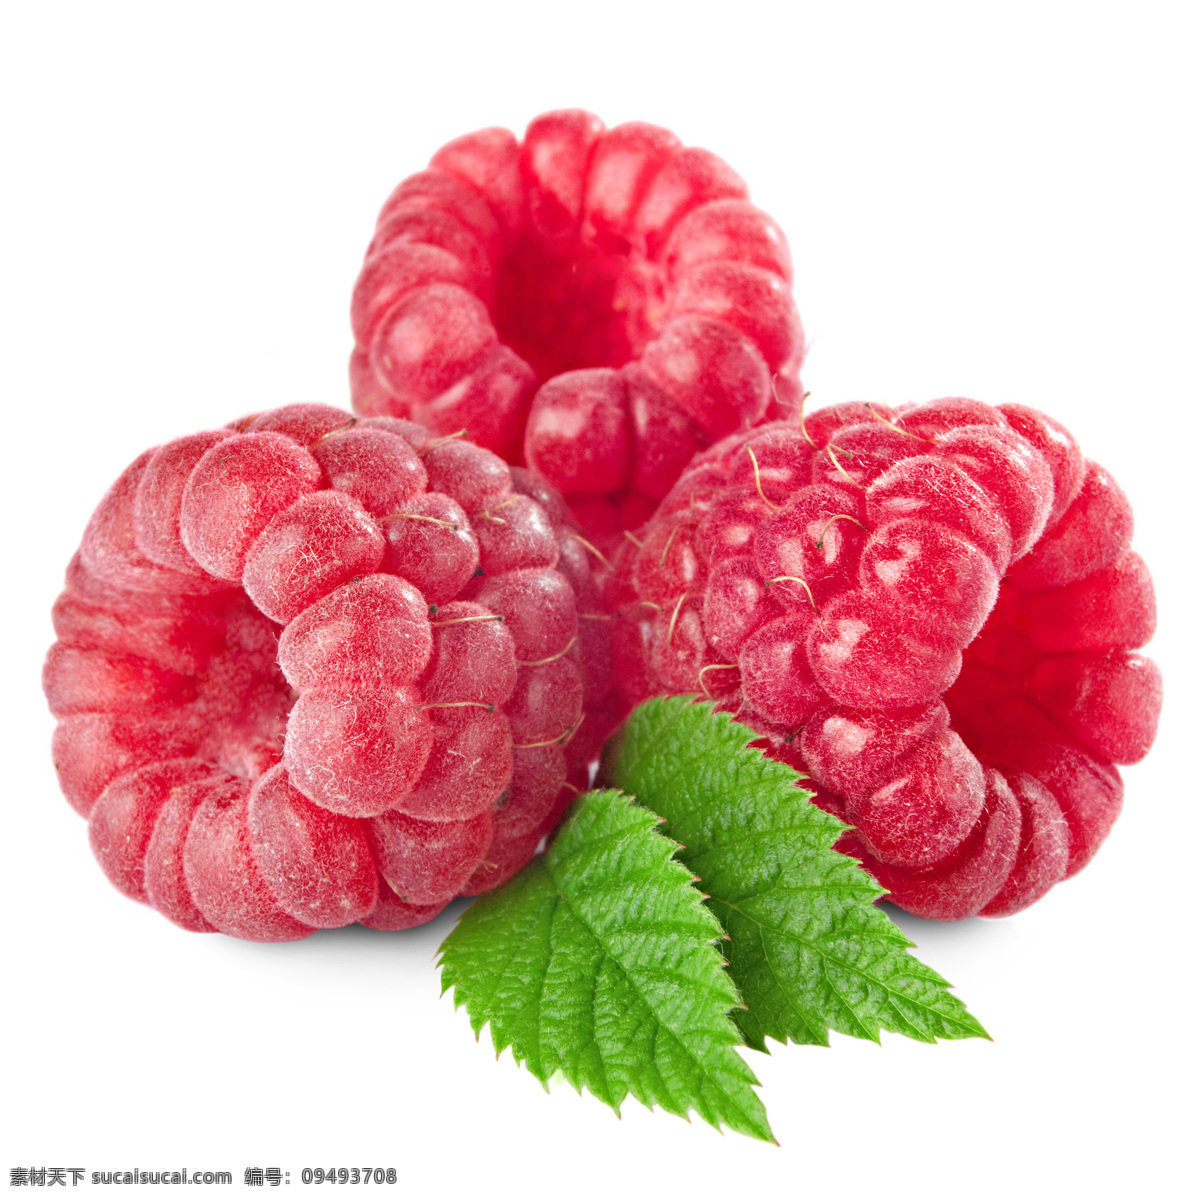 食物 水果 新鲜 可口 美味 树莓 绿叶 水果蔬菜 餐饮美食 白色